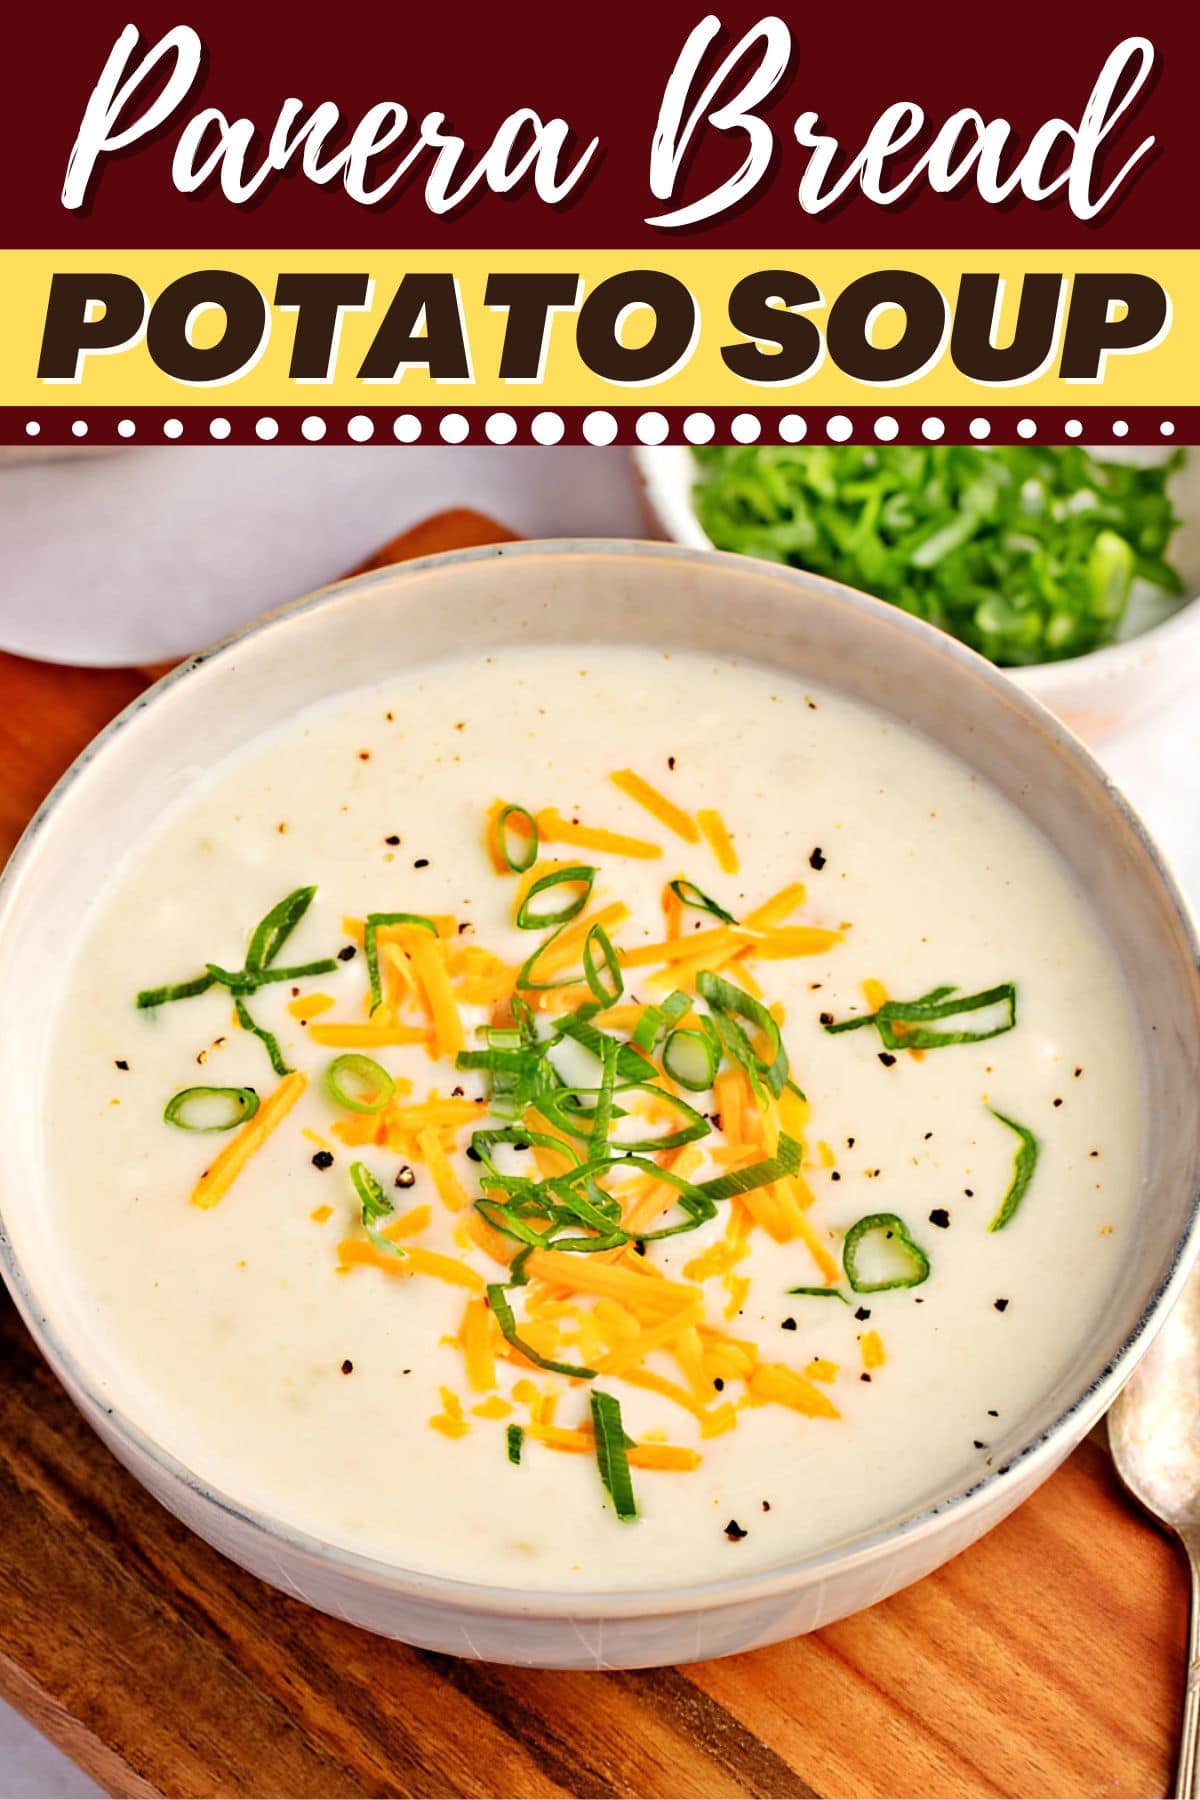 Panera Bread Potato Soup